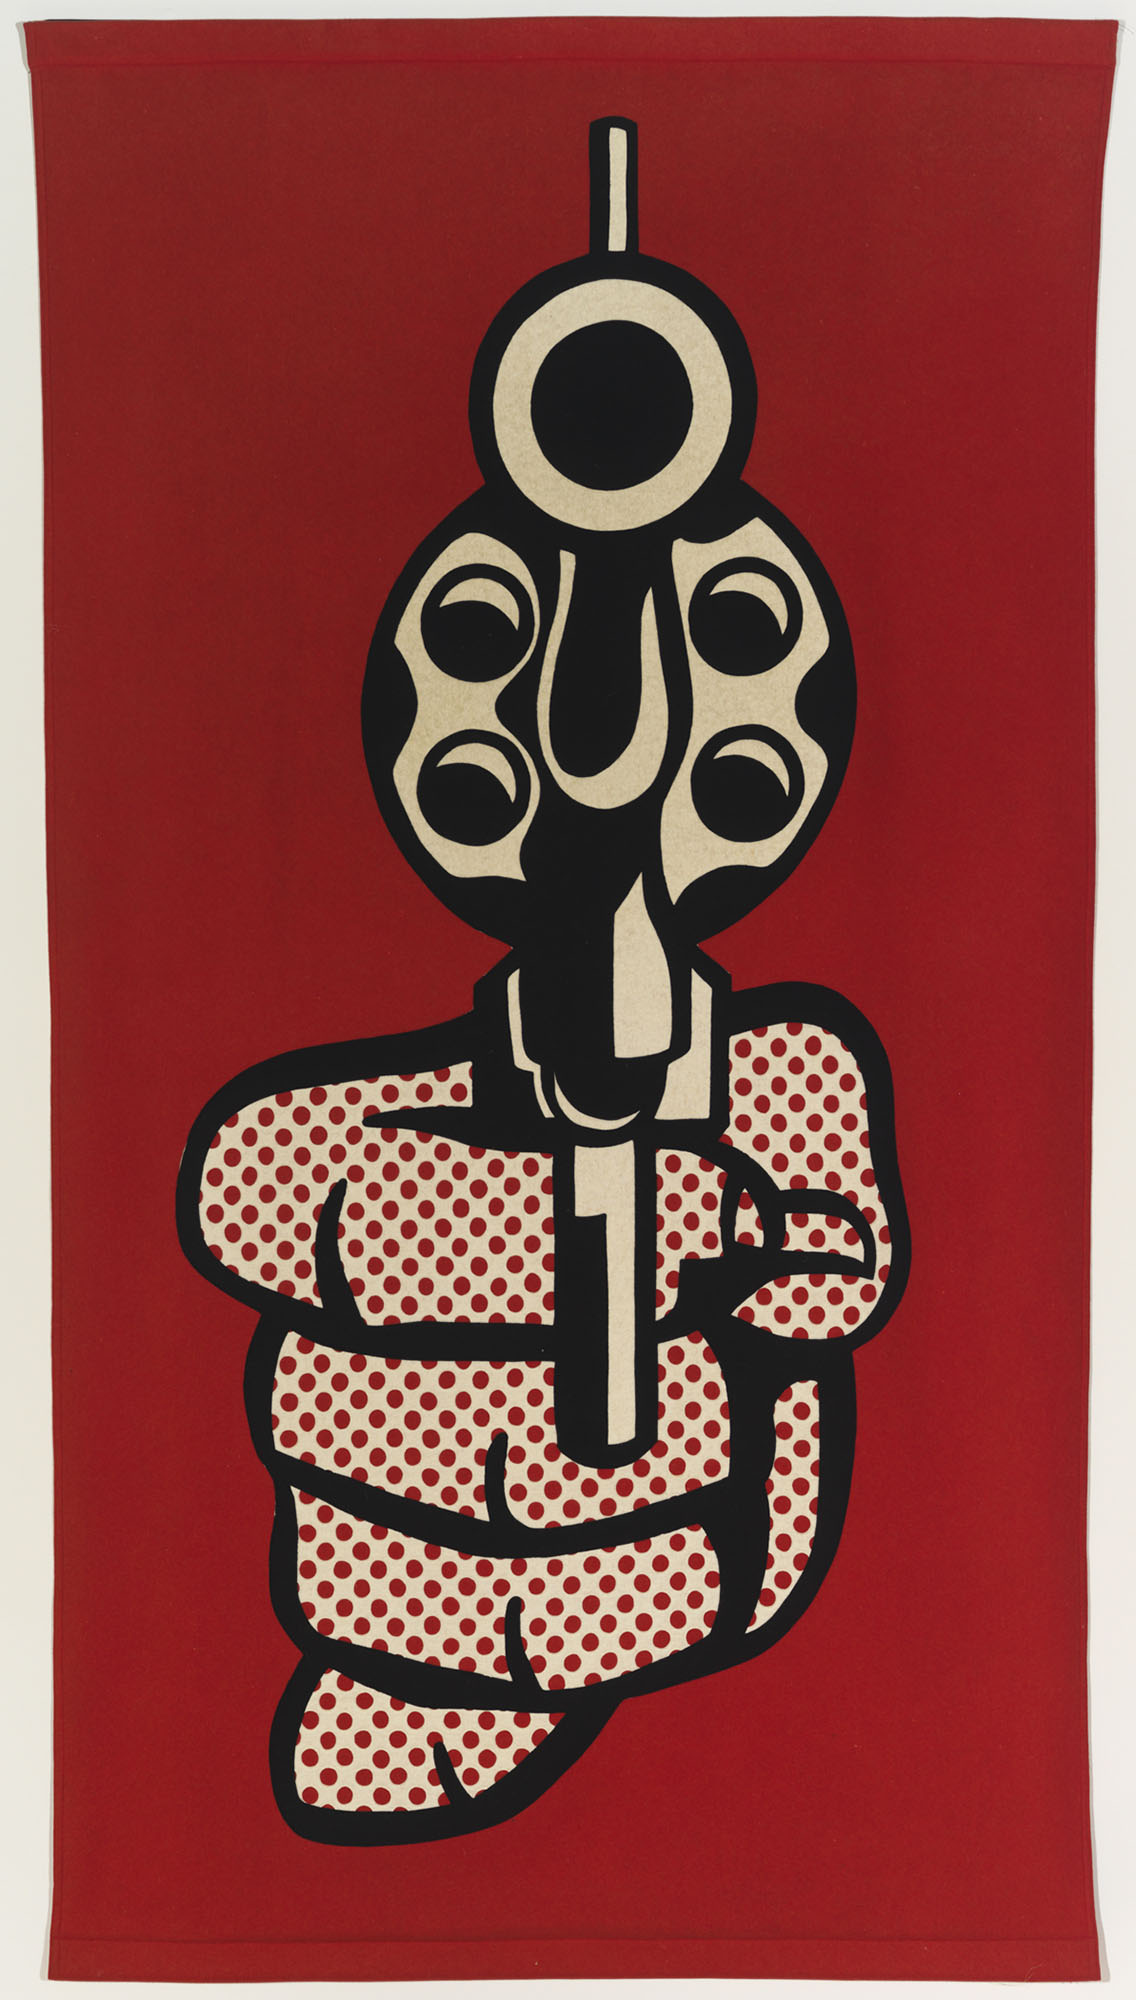 Roy Lichtenstein, Pistol, 1964. Felt. Stenn Family Collection, Chicago, Illinois. Photo by Tom Van Eynde